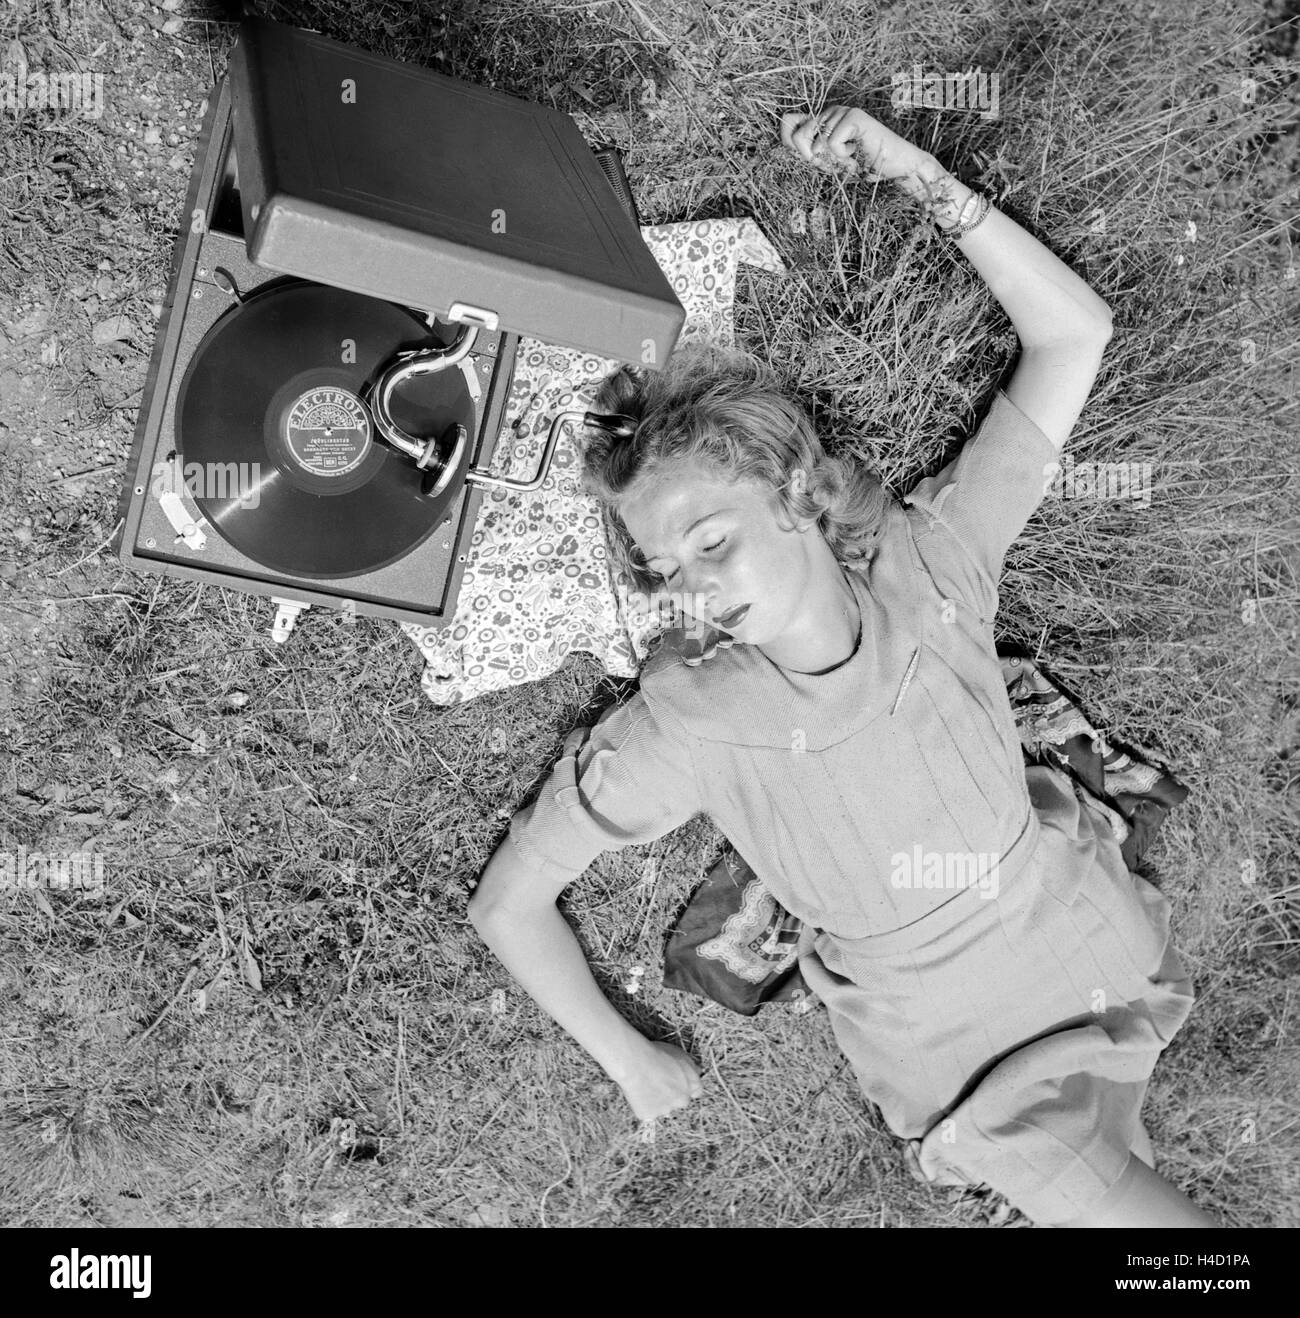 Eine junge Frau mit dem Electrola Koffer Grammofon und hört das Stück  "Frühlingstag" von Barnabas von Geczy, Österreich 1930er Jahre. A young  woman with an Electrola gramophone and an Electrola shellac record,